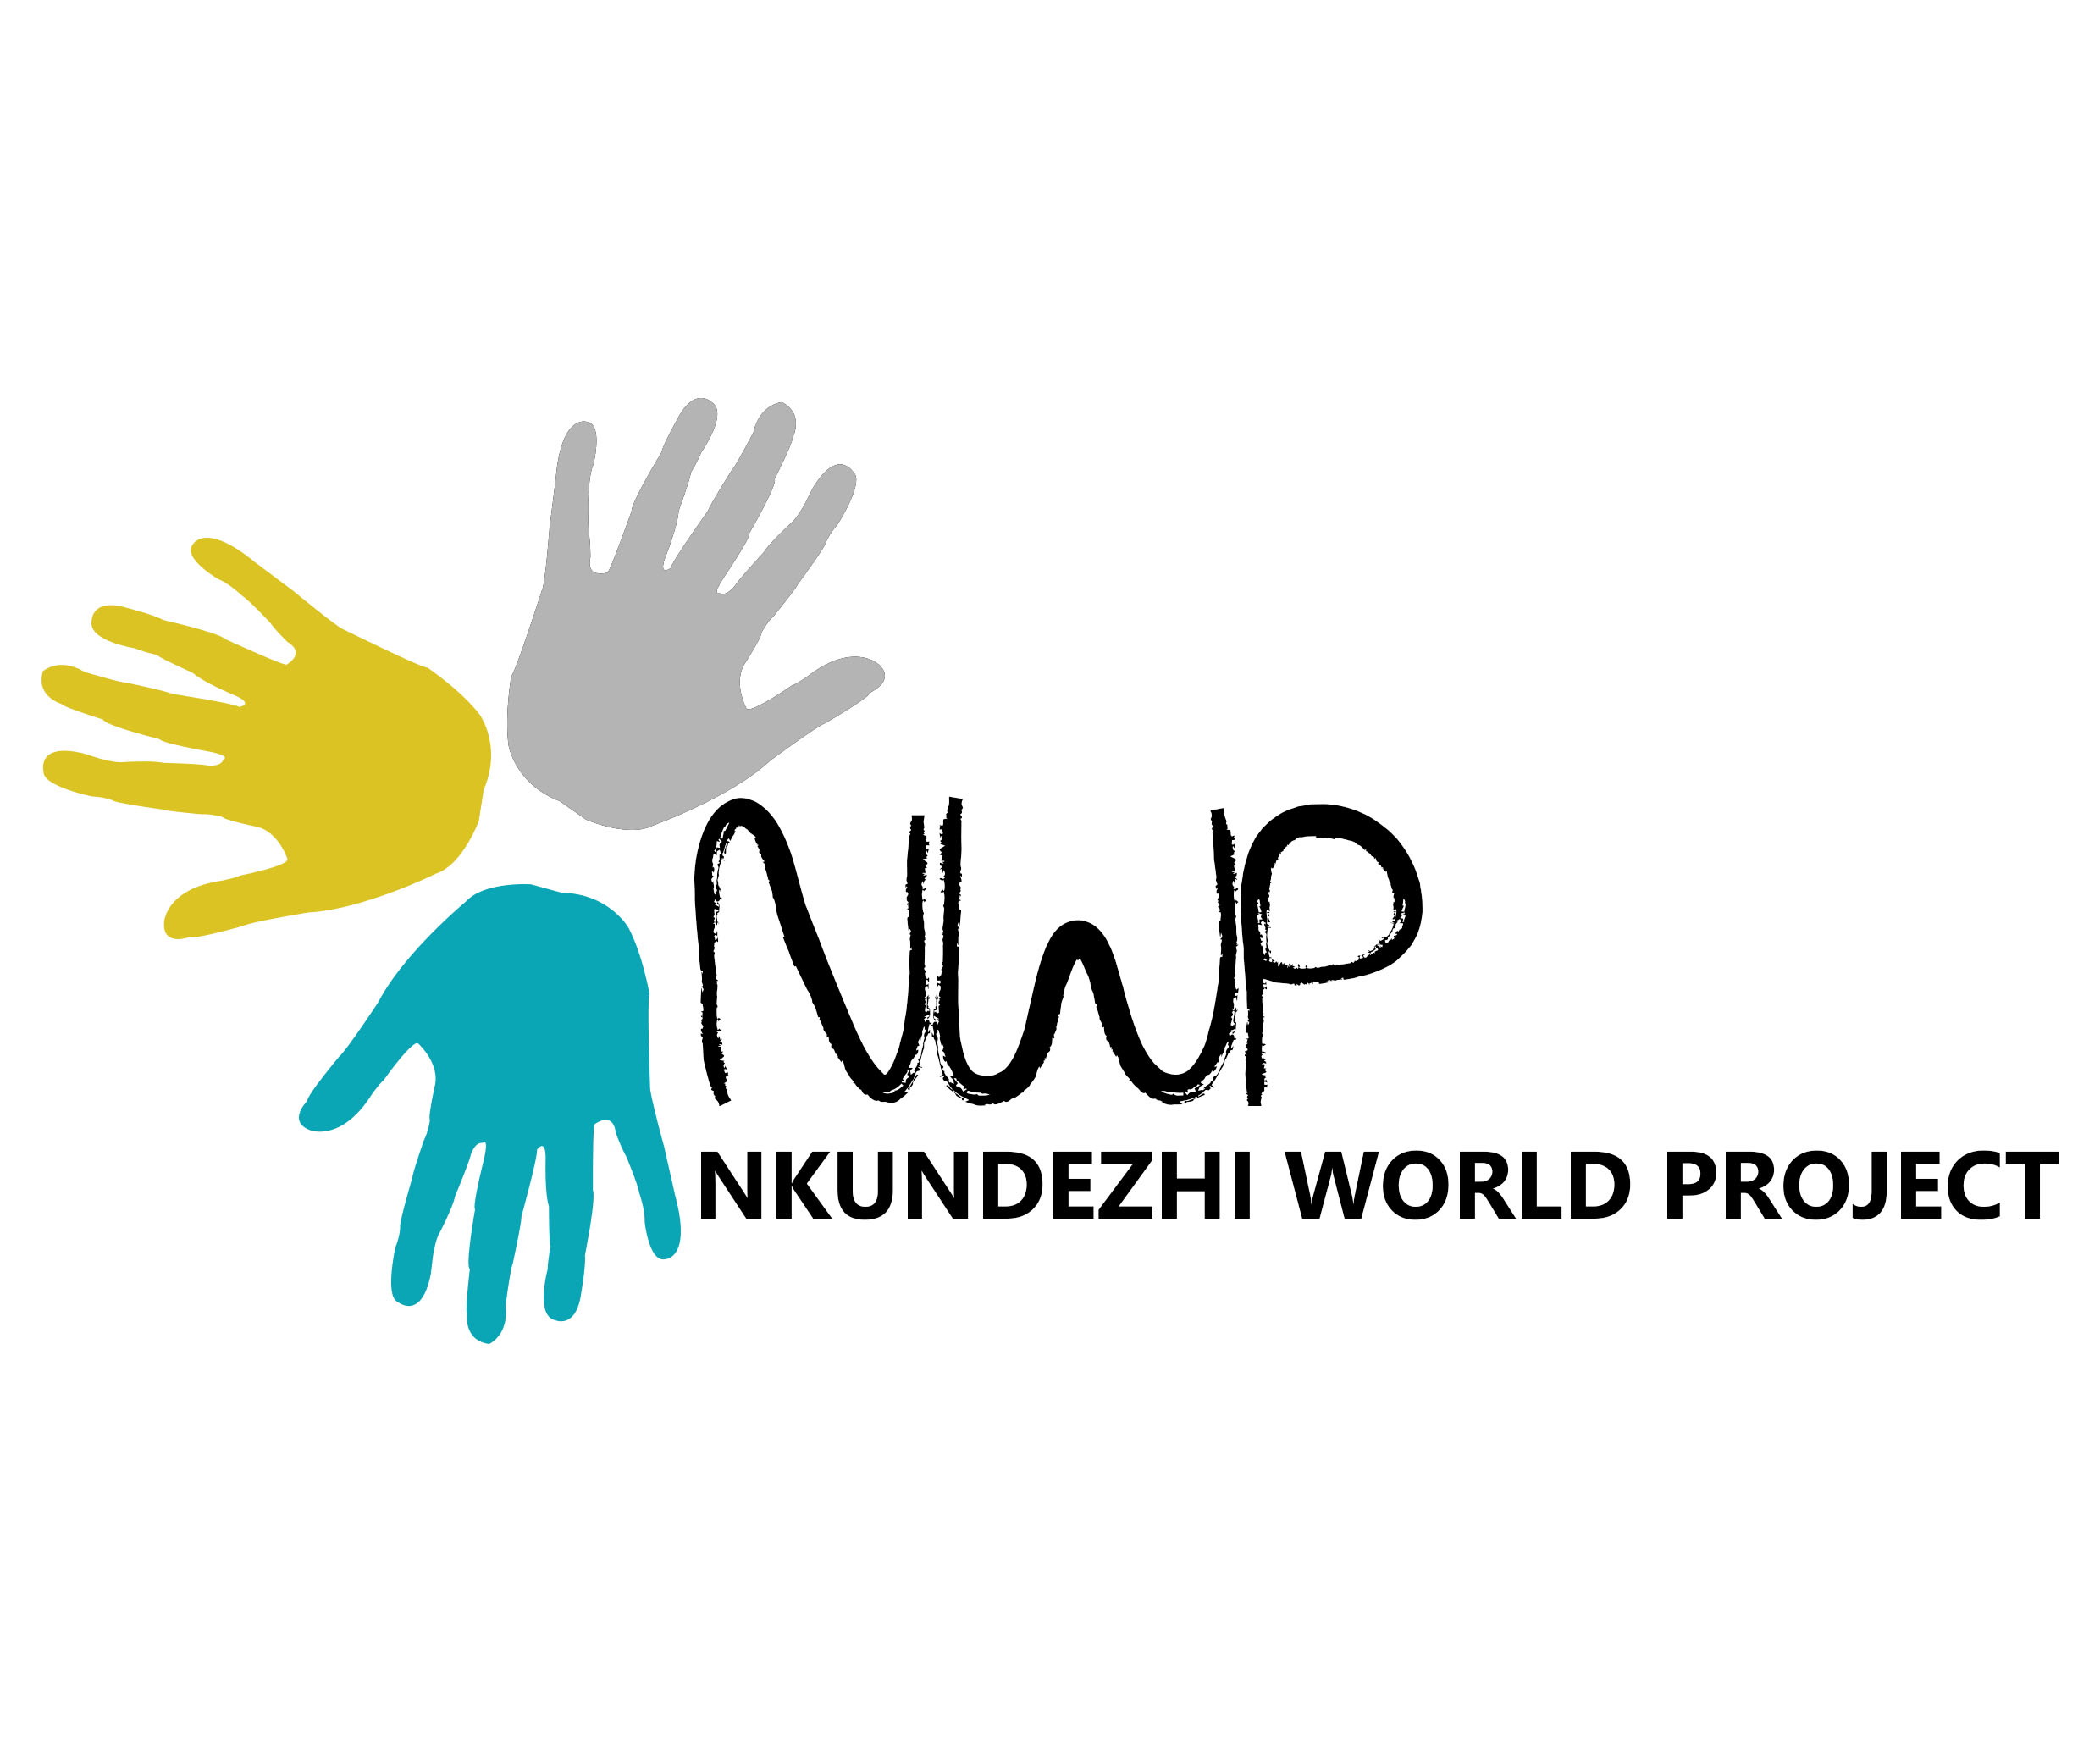 Nkundezhi World Project logo